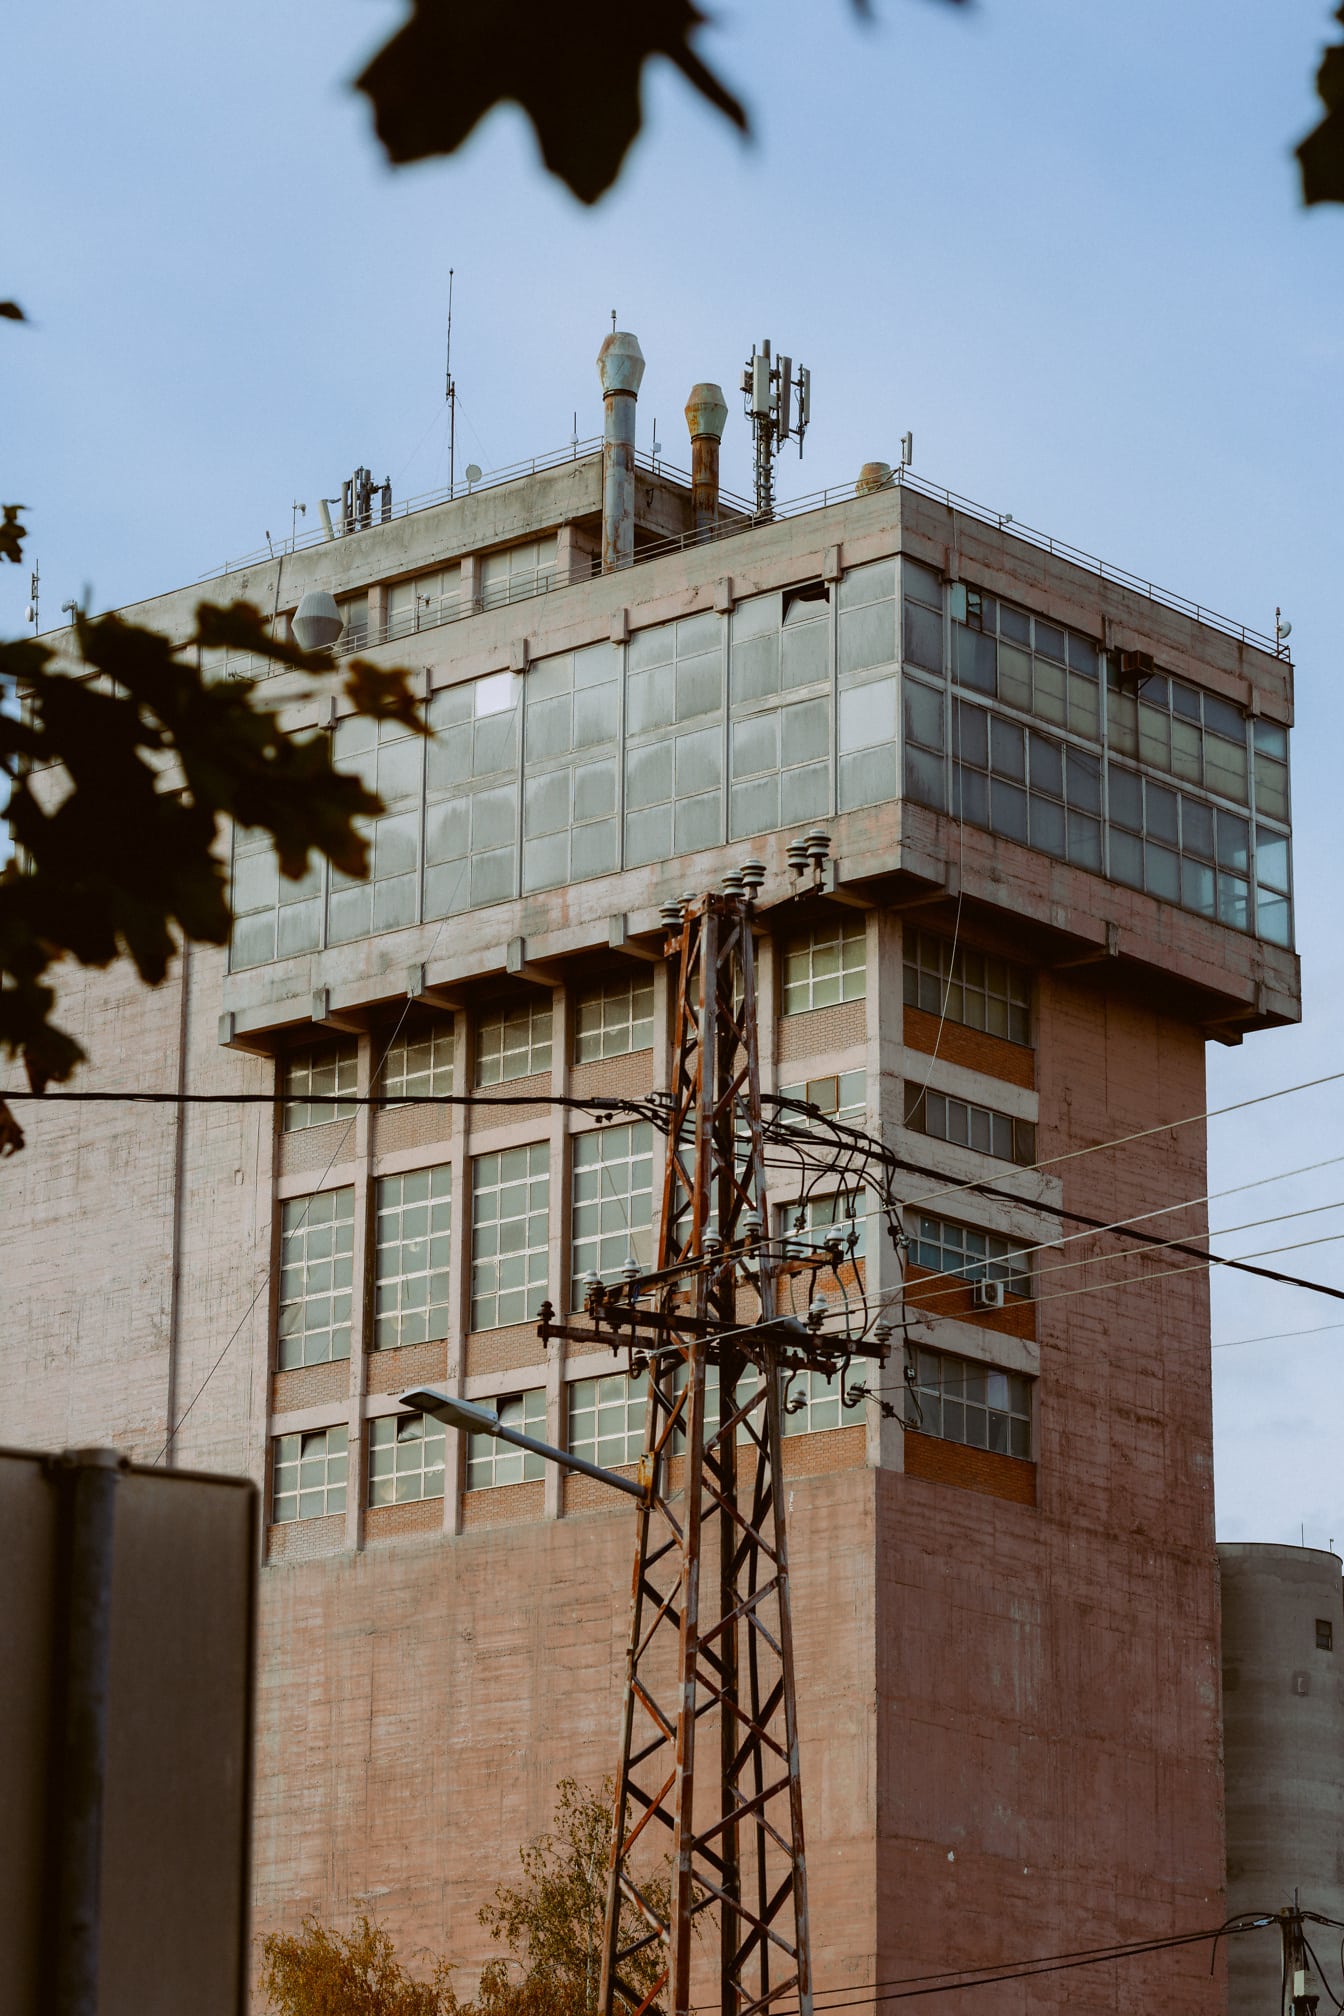 Rozsdás elektromos torony az épület előtt szocializmus építészeti stílusban